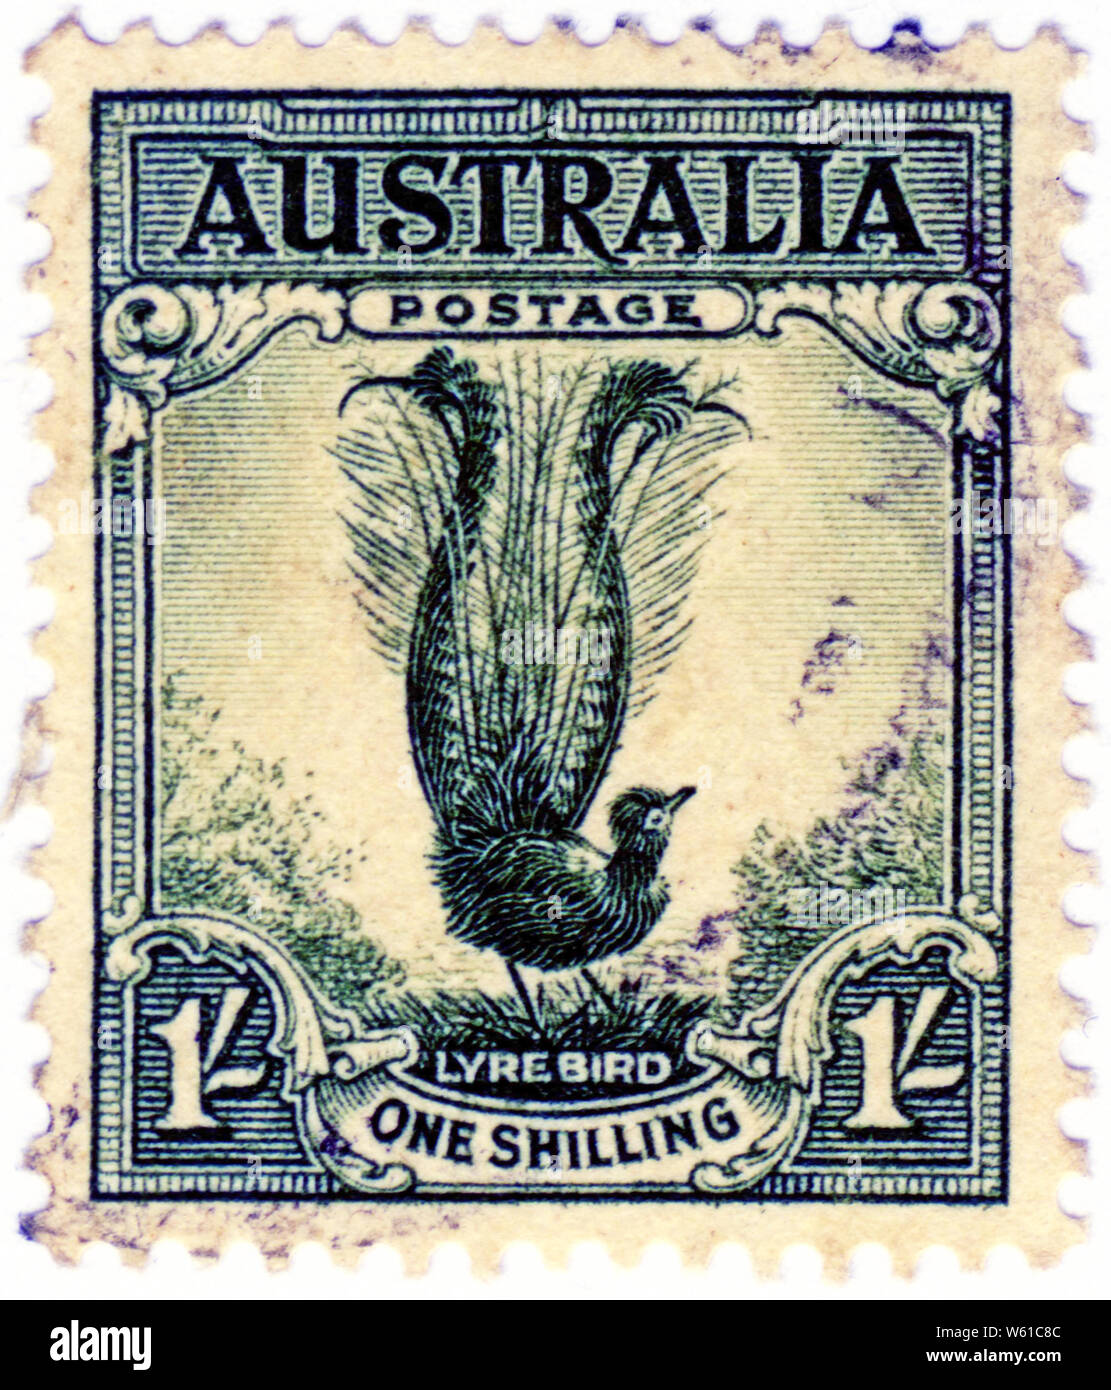 Ein shilling Australischen Briefmarke mit dem Leierschwanz-vogels, einer der legendären Vögel im Australischen Busch Stockfoto